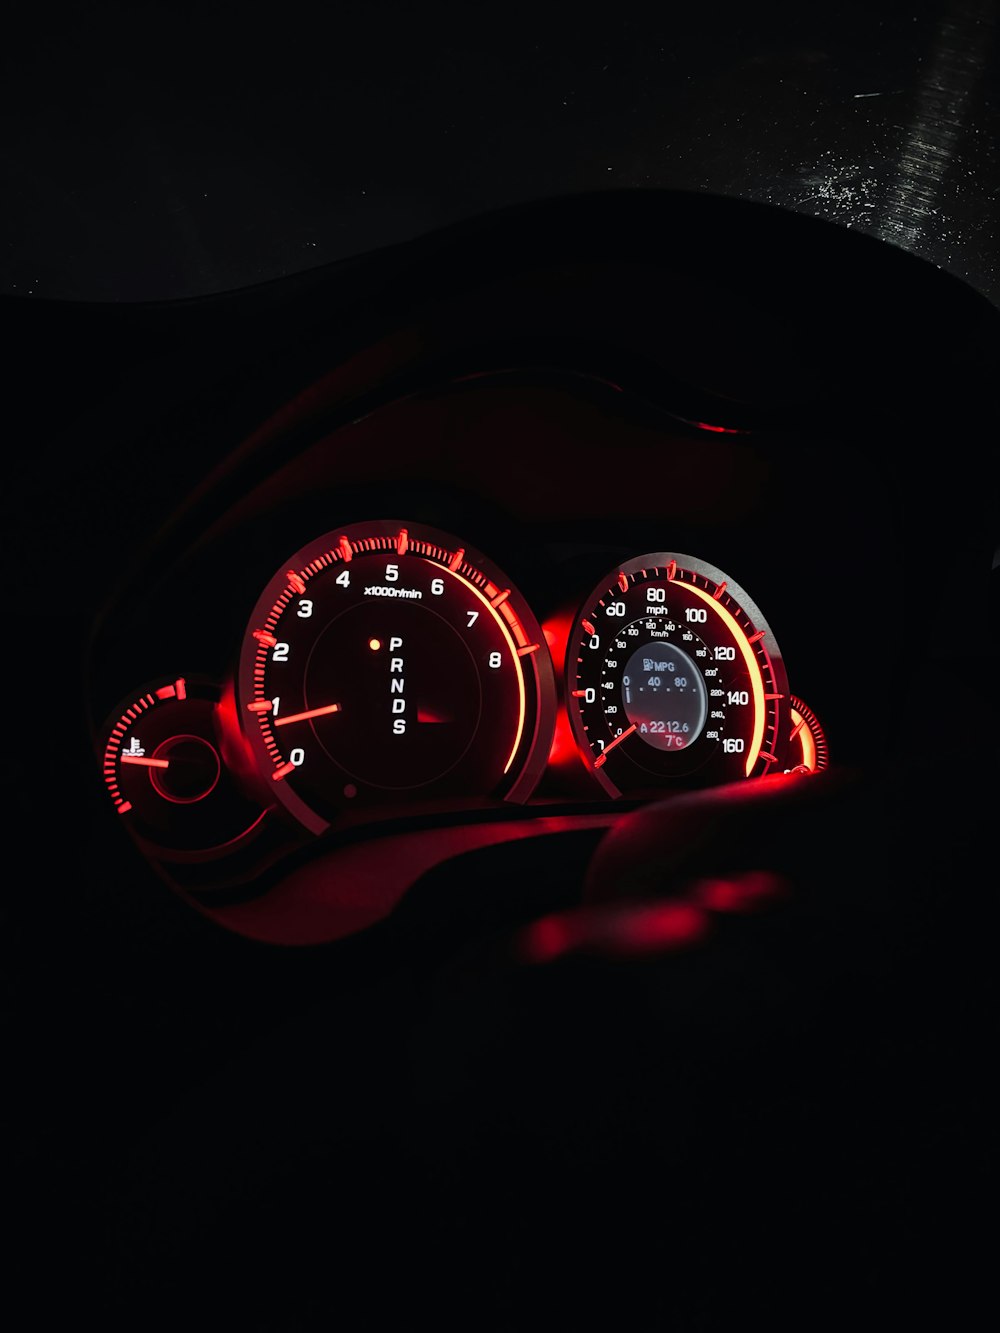 Das Armaturenbrett eines Autos mit roten Lichtern